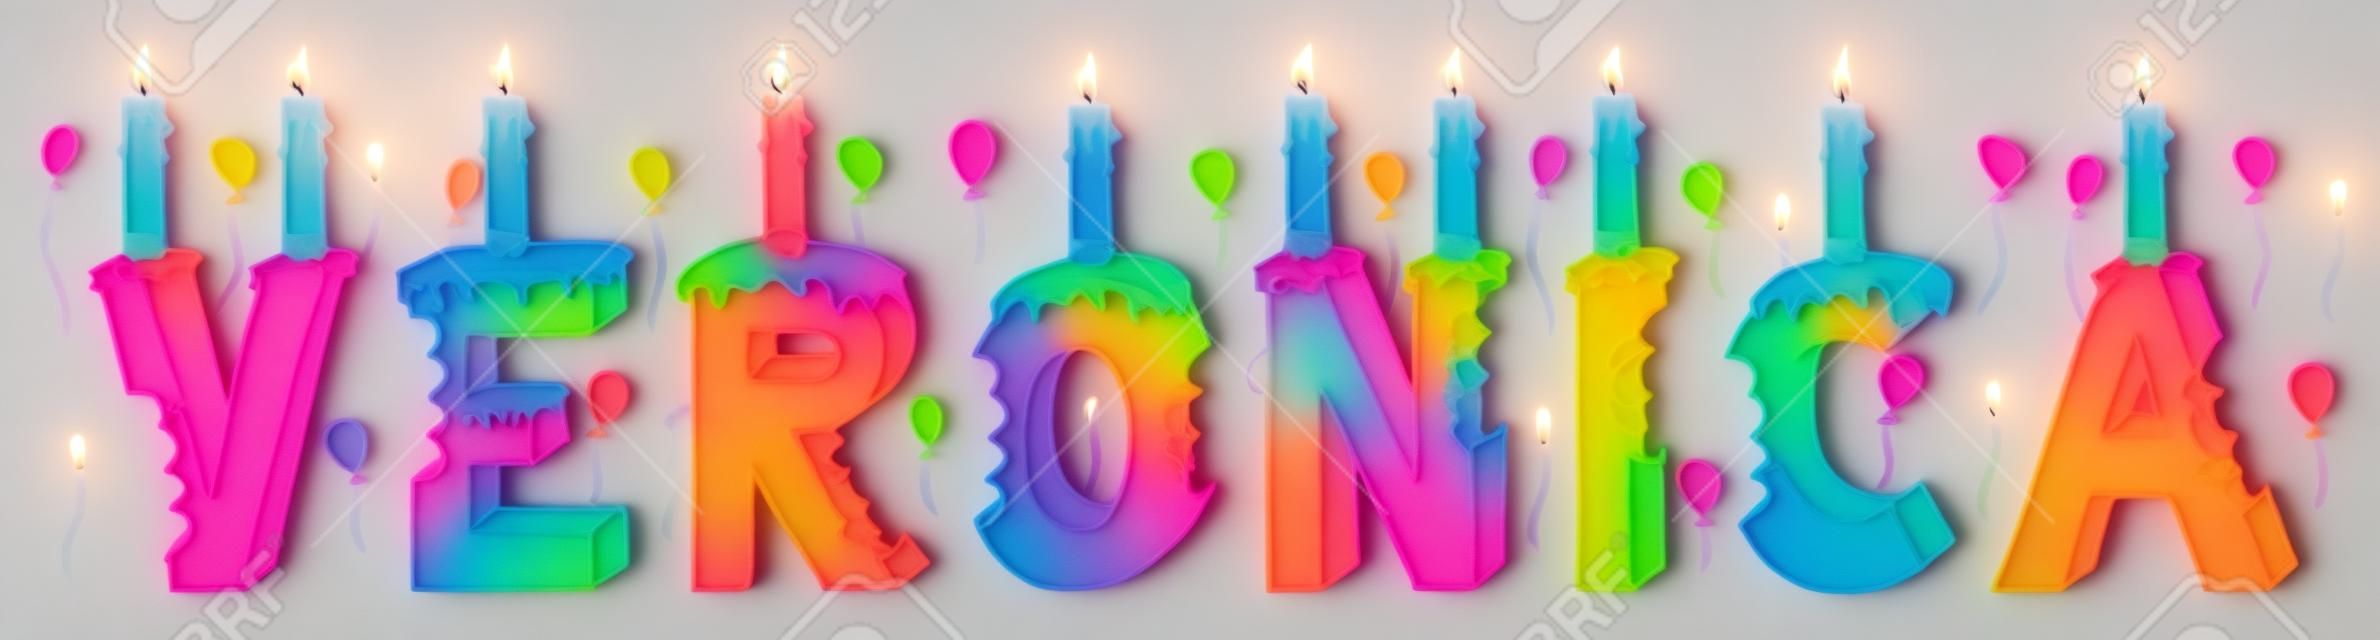 Veronica prénom féminin mordu. Gâteau d'anniversaire lettrage 3d coloré avec des bougies et des ballons.